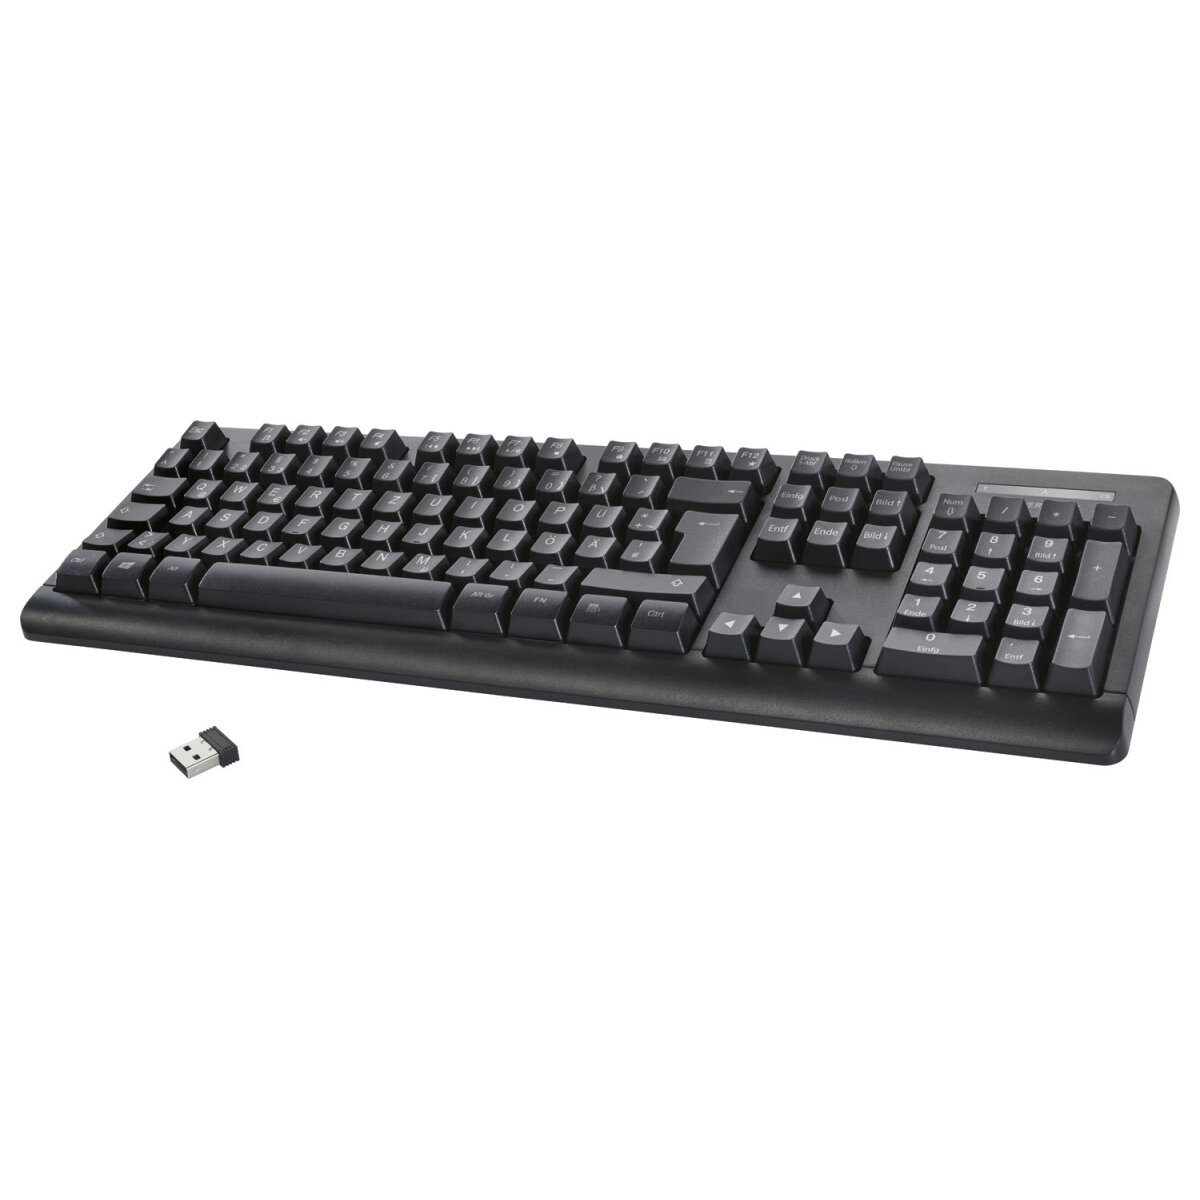 SILVERCREST® Tastatur, kabellos, mit USB-Nano-Empfänger - B-Ware sehr gut,  9,09 €